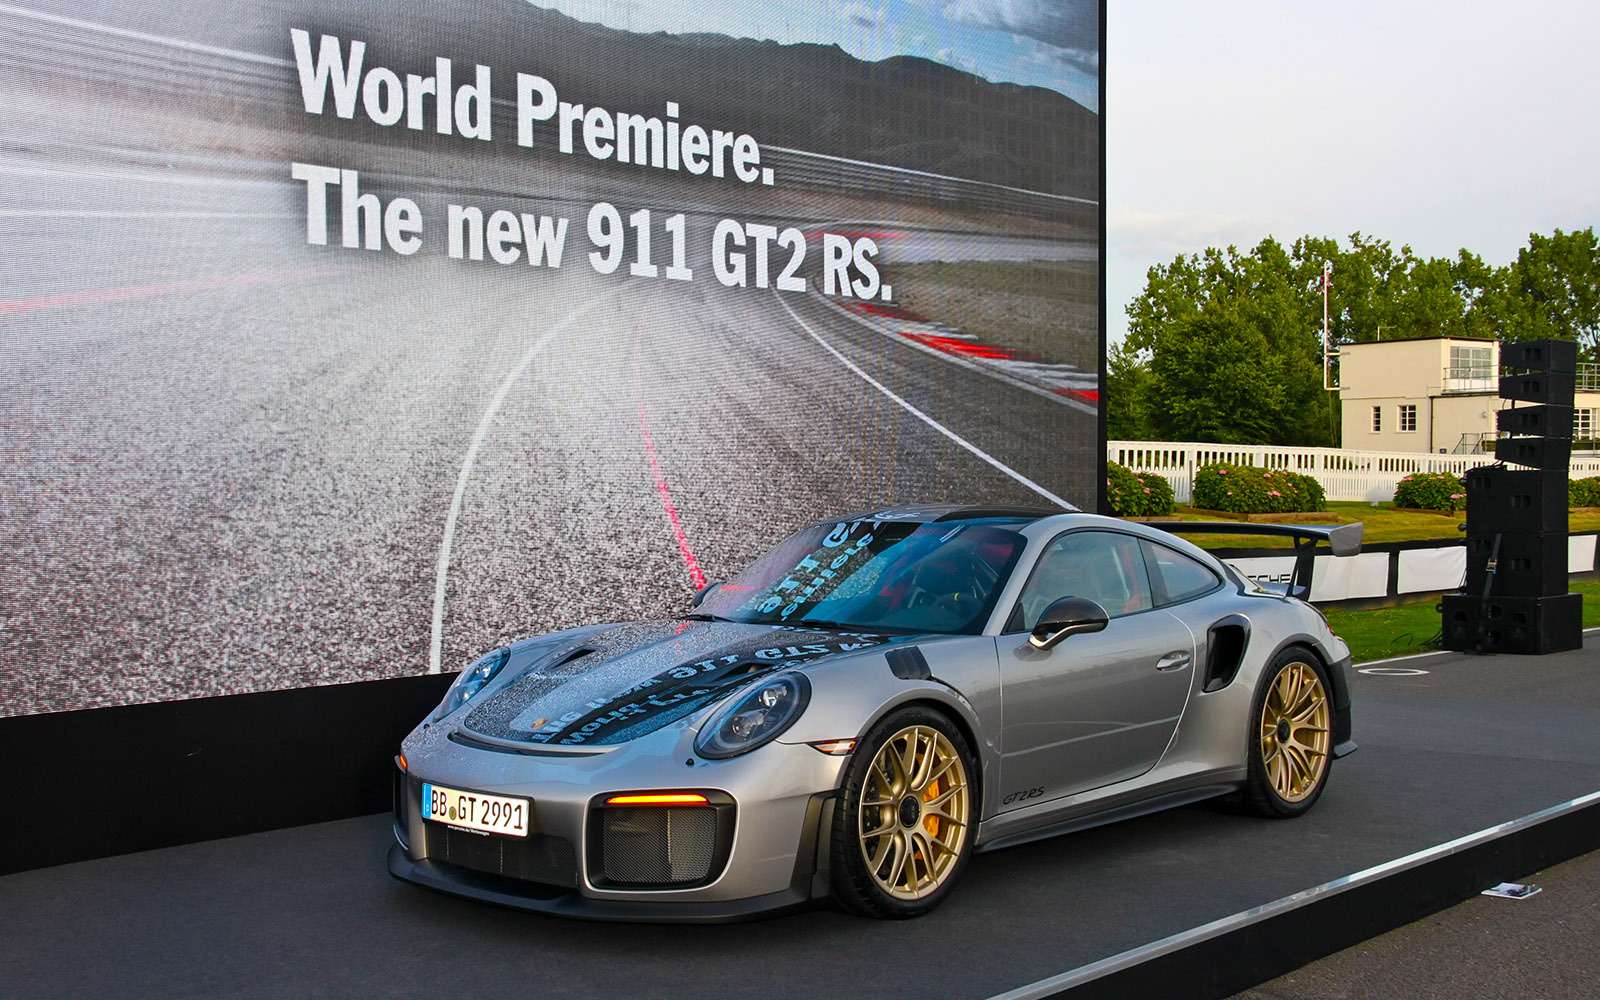 В Гудвуде состоялась мировая премьера купе Porsche 911 GT2 RS, самой мощной серийной версии семейства 911. Оппозитный двигатель объемом 3,8 литра развивает 700 л.с. при 7000 об/мин. До 100 км/ч GT2 RS разгоняется как спортбайк – всего за 2,8 секунды! Максимальная скорость достигает 340 км/ч. Базовая цена в России – 19 245 000 рублей.